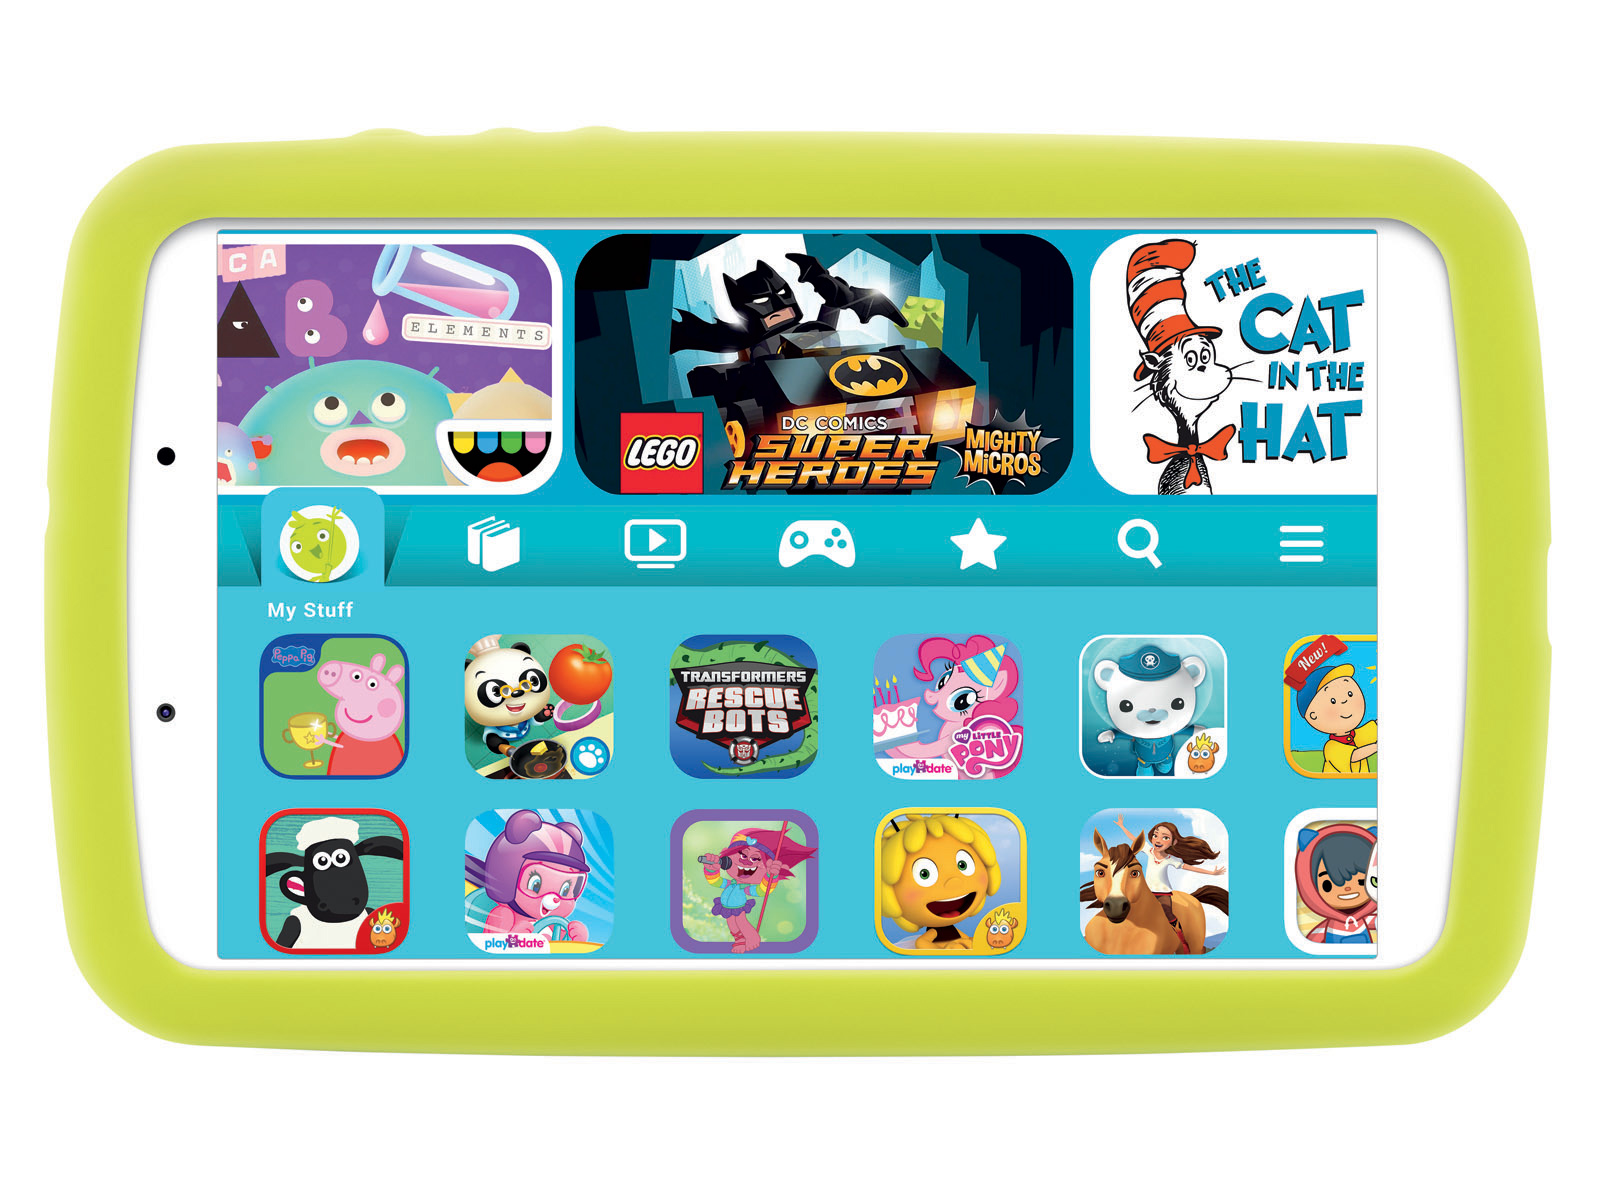 Samsung Galaxy Tab A Kids Edition (2019), 32GB, Silver (WiFi) Tablets